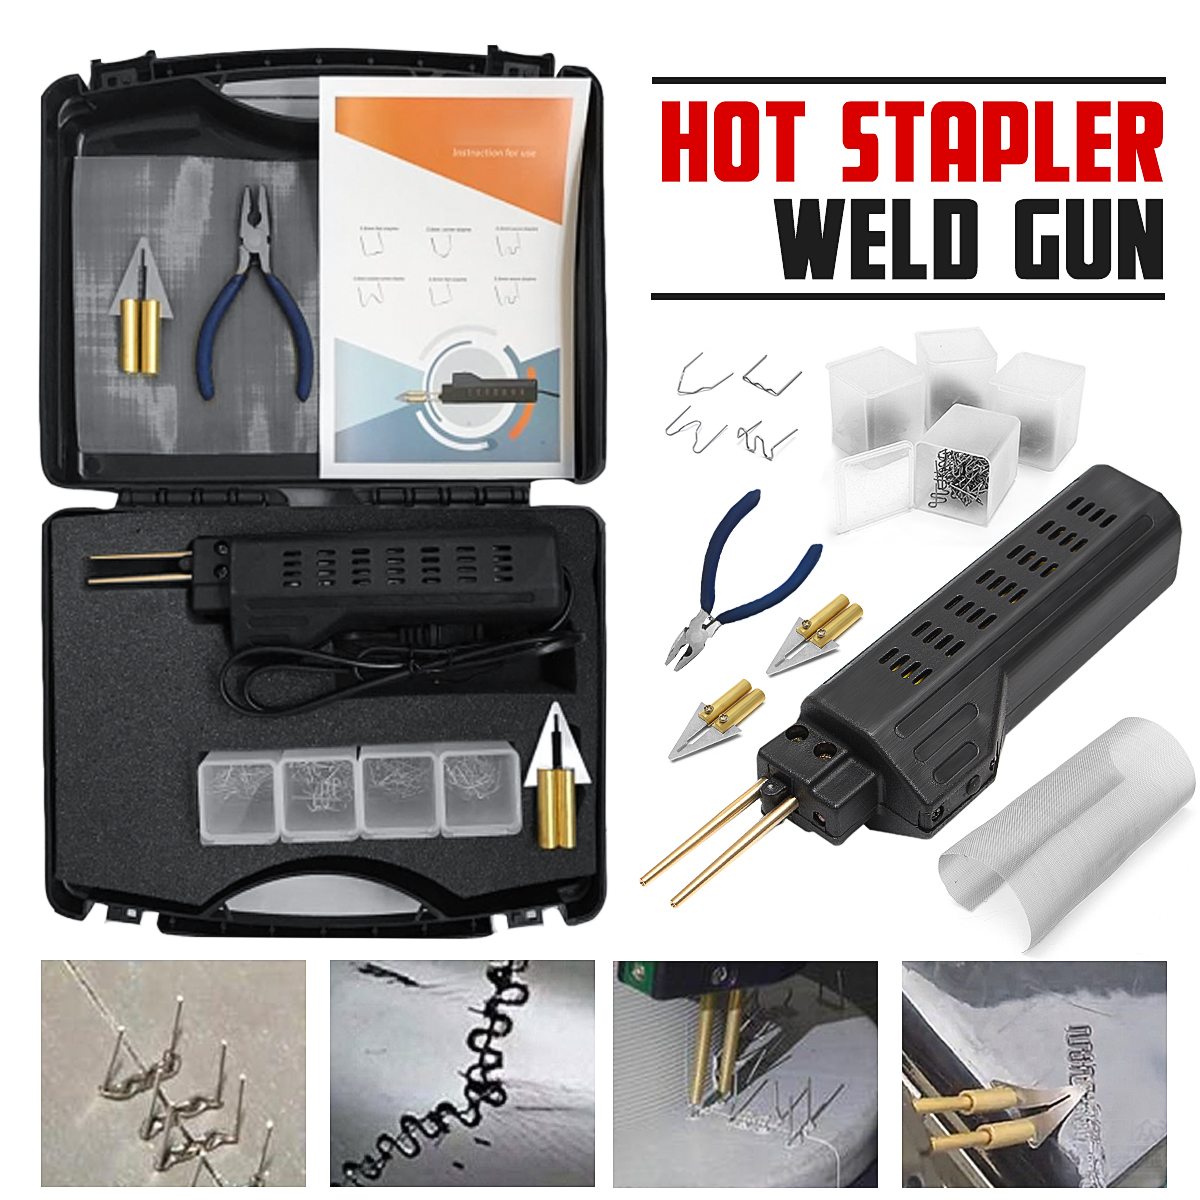 Hot-Stapler-Car-Auto-Bumper-Fairing-Plastic-Welder-Guns-Repair-Kit--200-Staples-110V-US-Plug-1829585-1